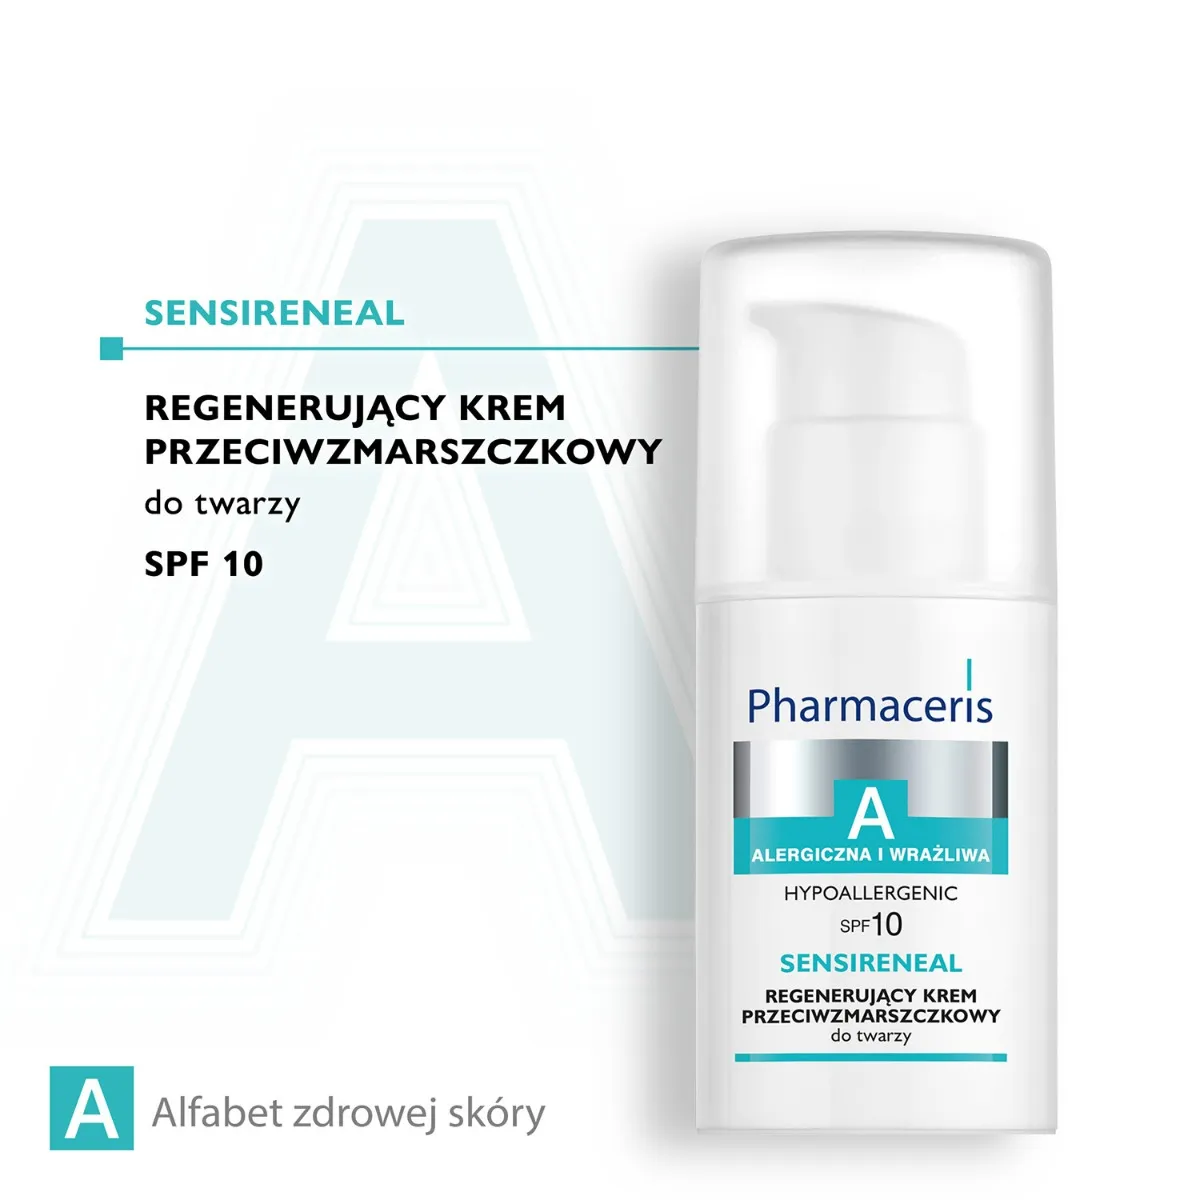 Pharmaceris A Sensireneal, regenerujący krem przeciwzmarszczkowy do twarzy, SPF 10, 30 ml 